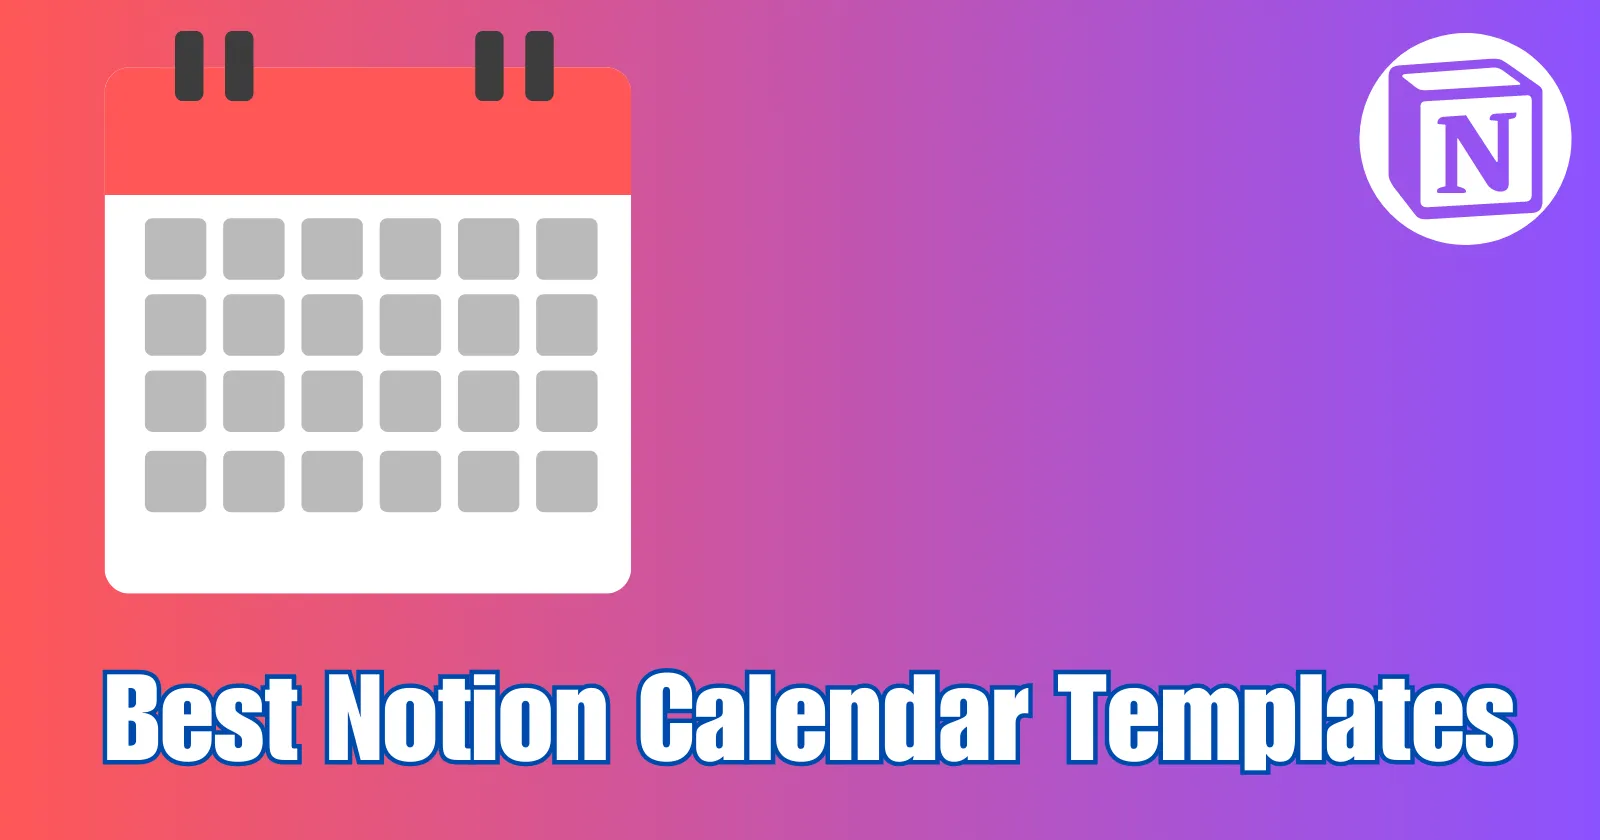 Best Notion Calendar Templates